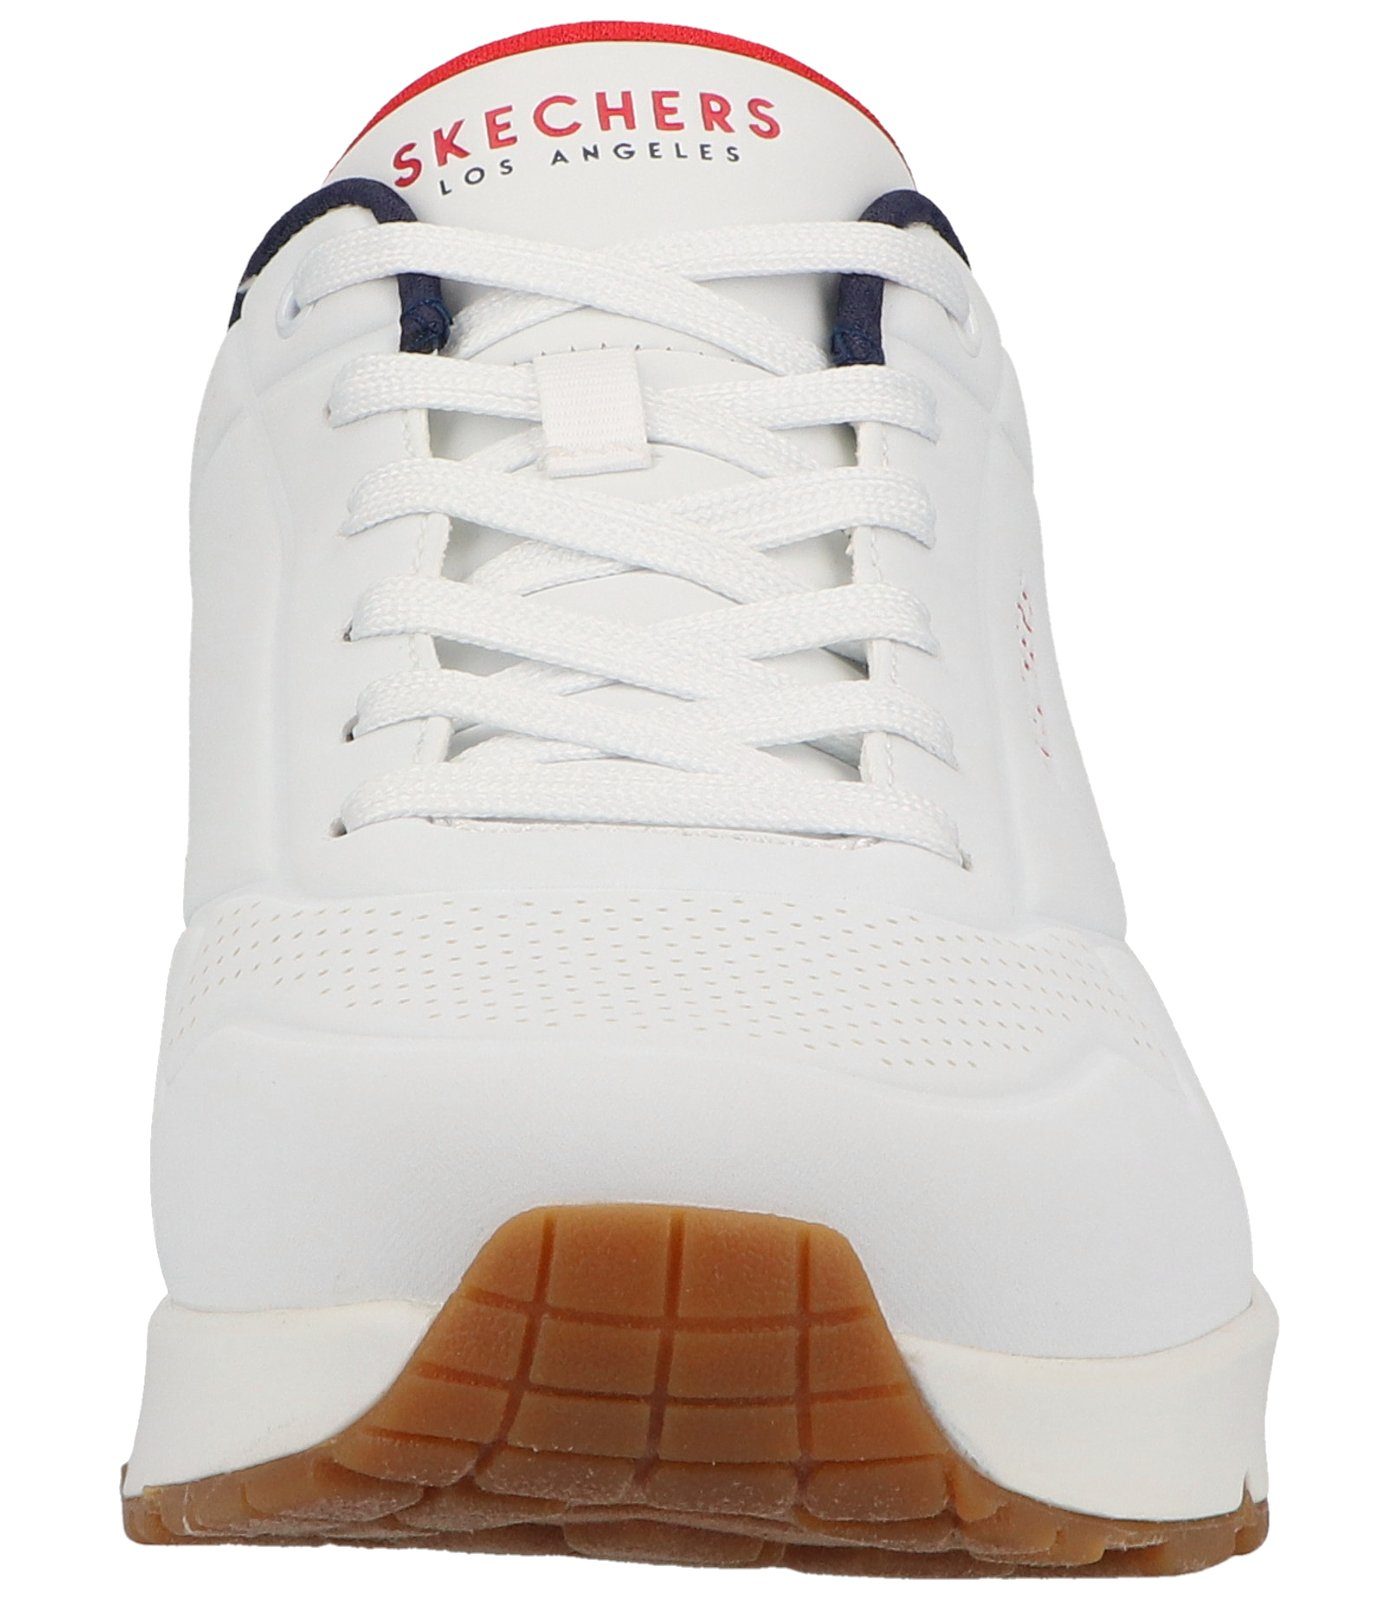 Sneaker Lederimitat Sneaker white/navy/red Skechers